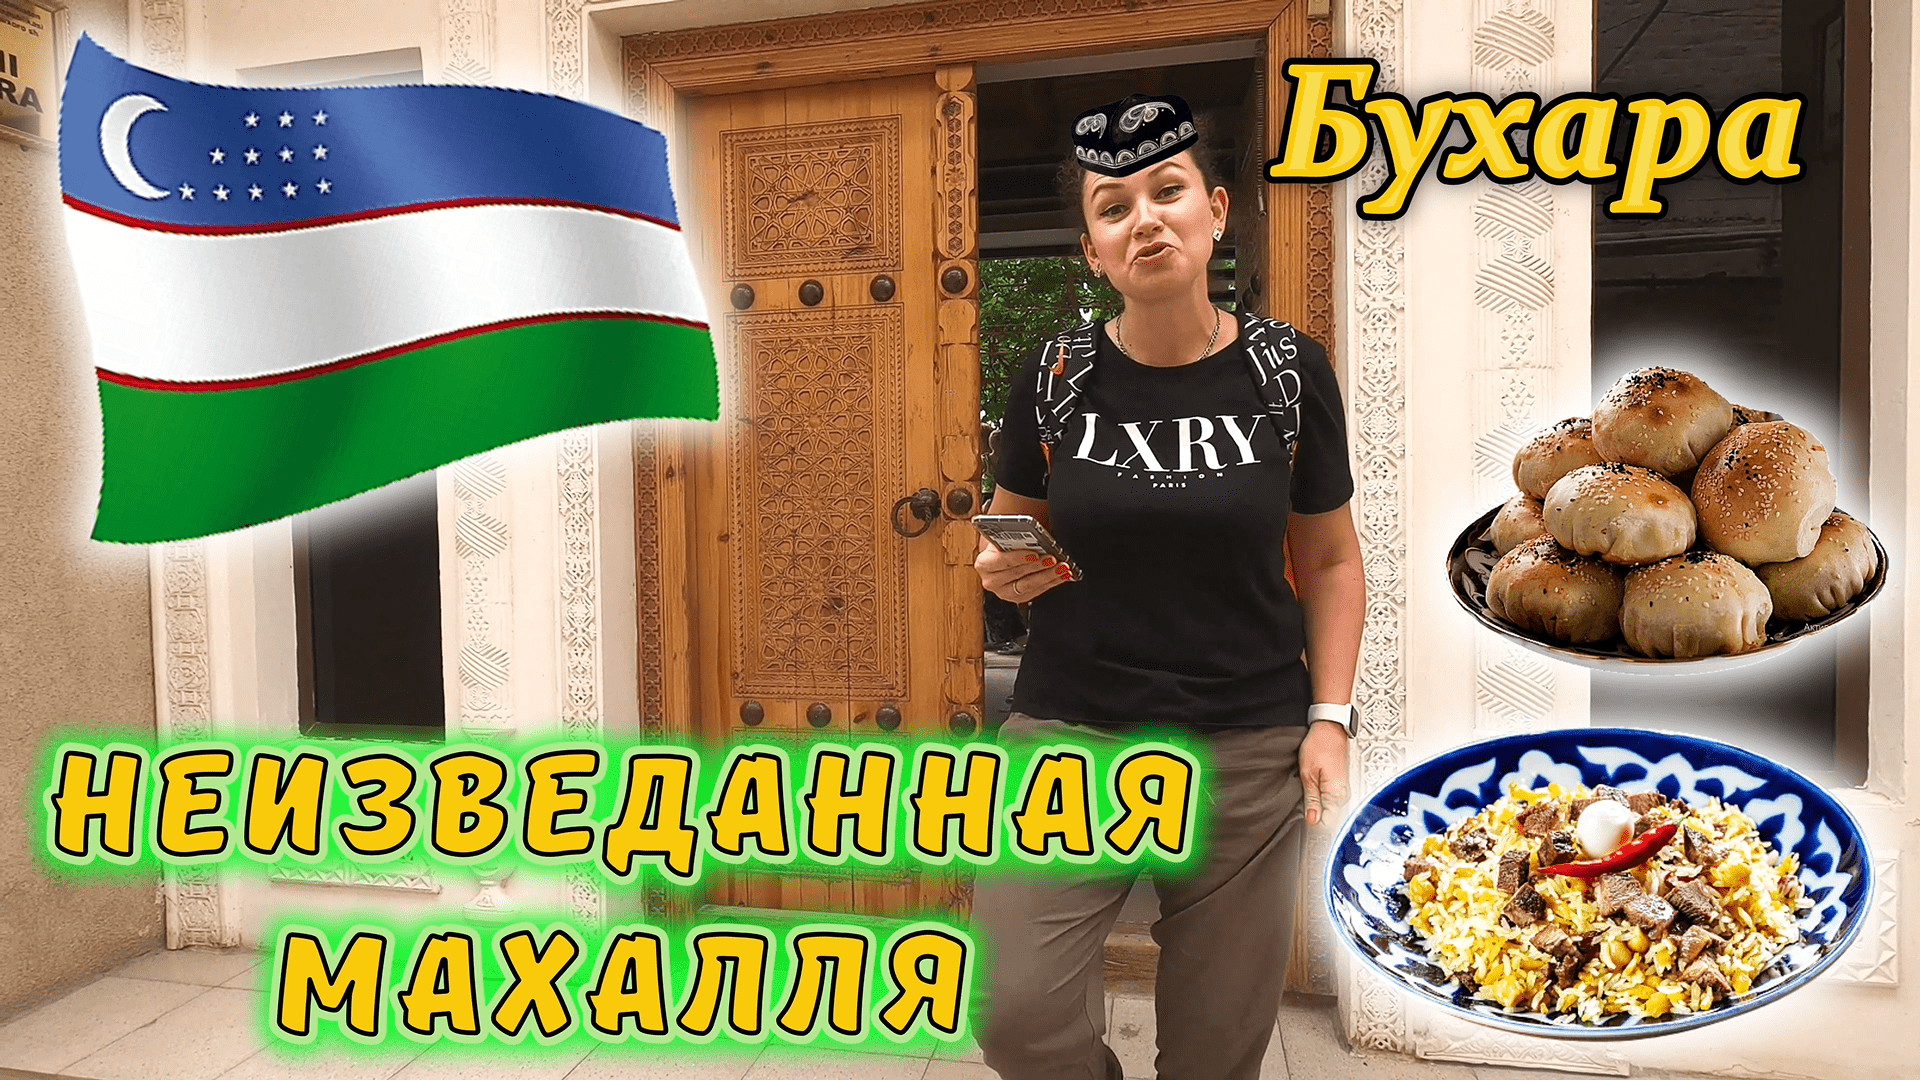 Узбекистан!!! Бухарская махалля, там не ходят туристы !!! В гостях у бухарской семьи !!!